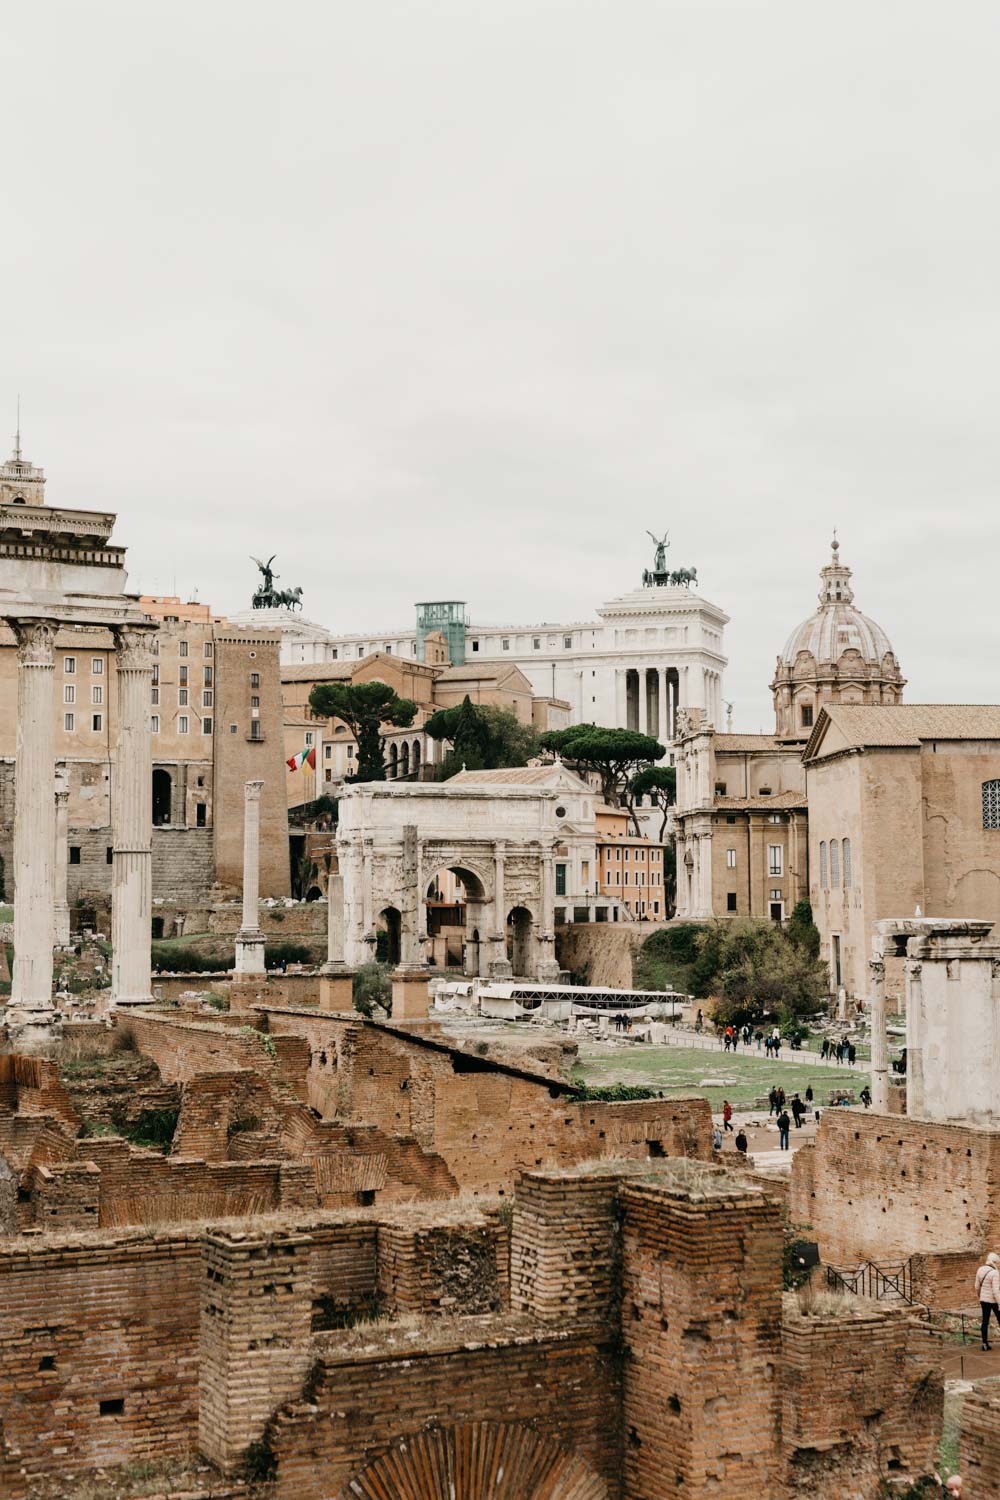 Adventure in Rome